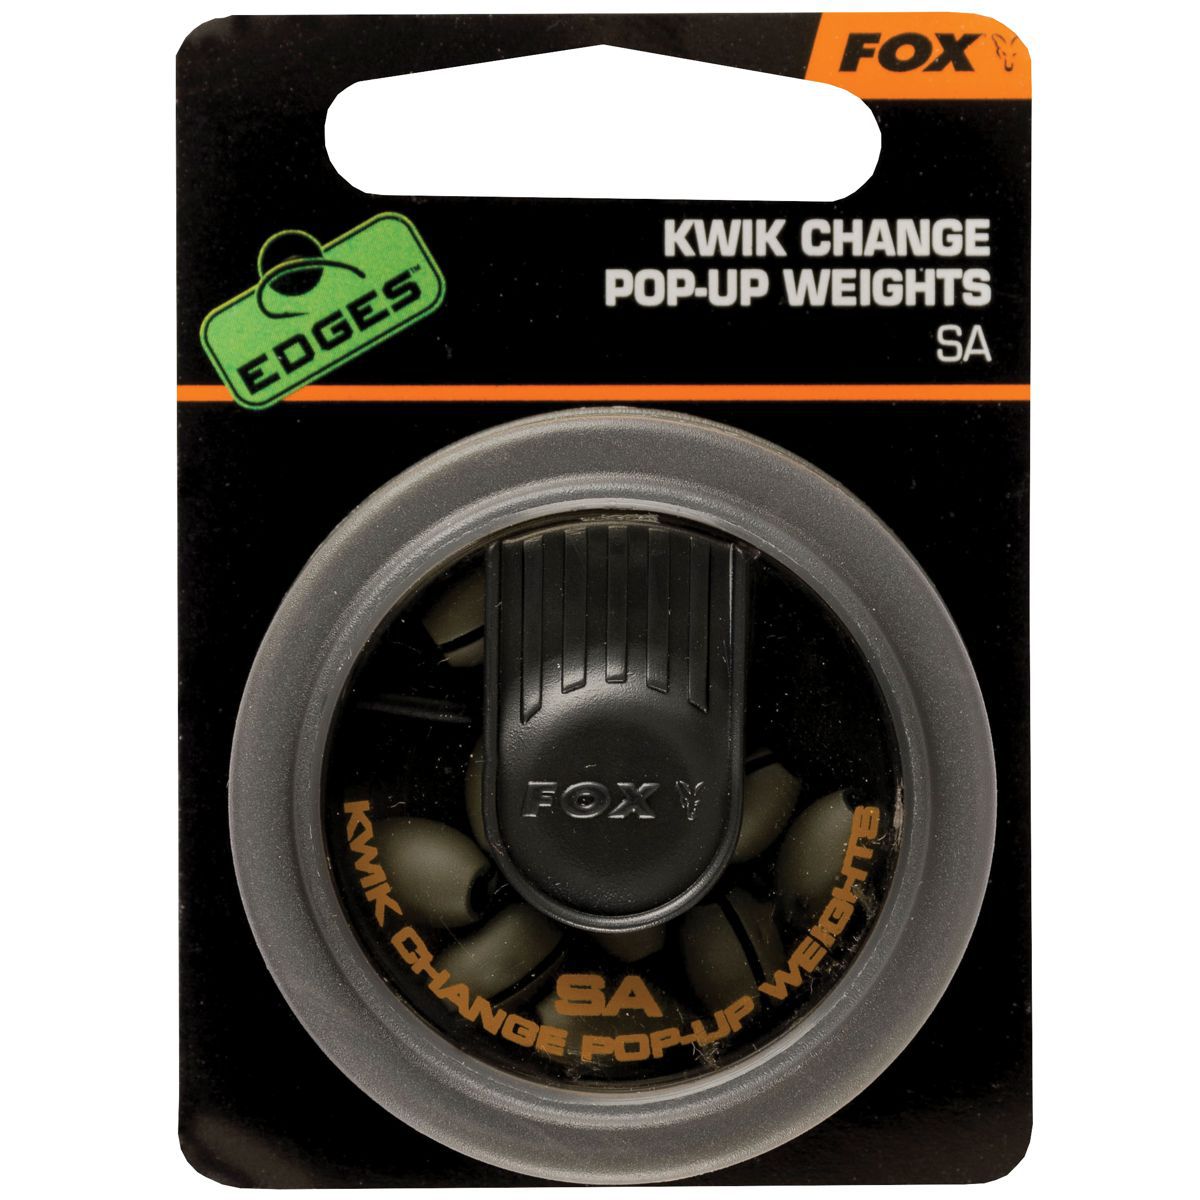 FOX Kwick Change POP up SA